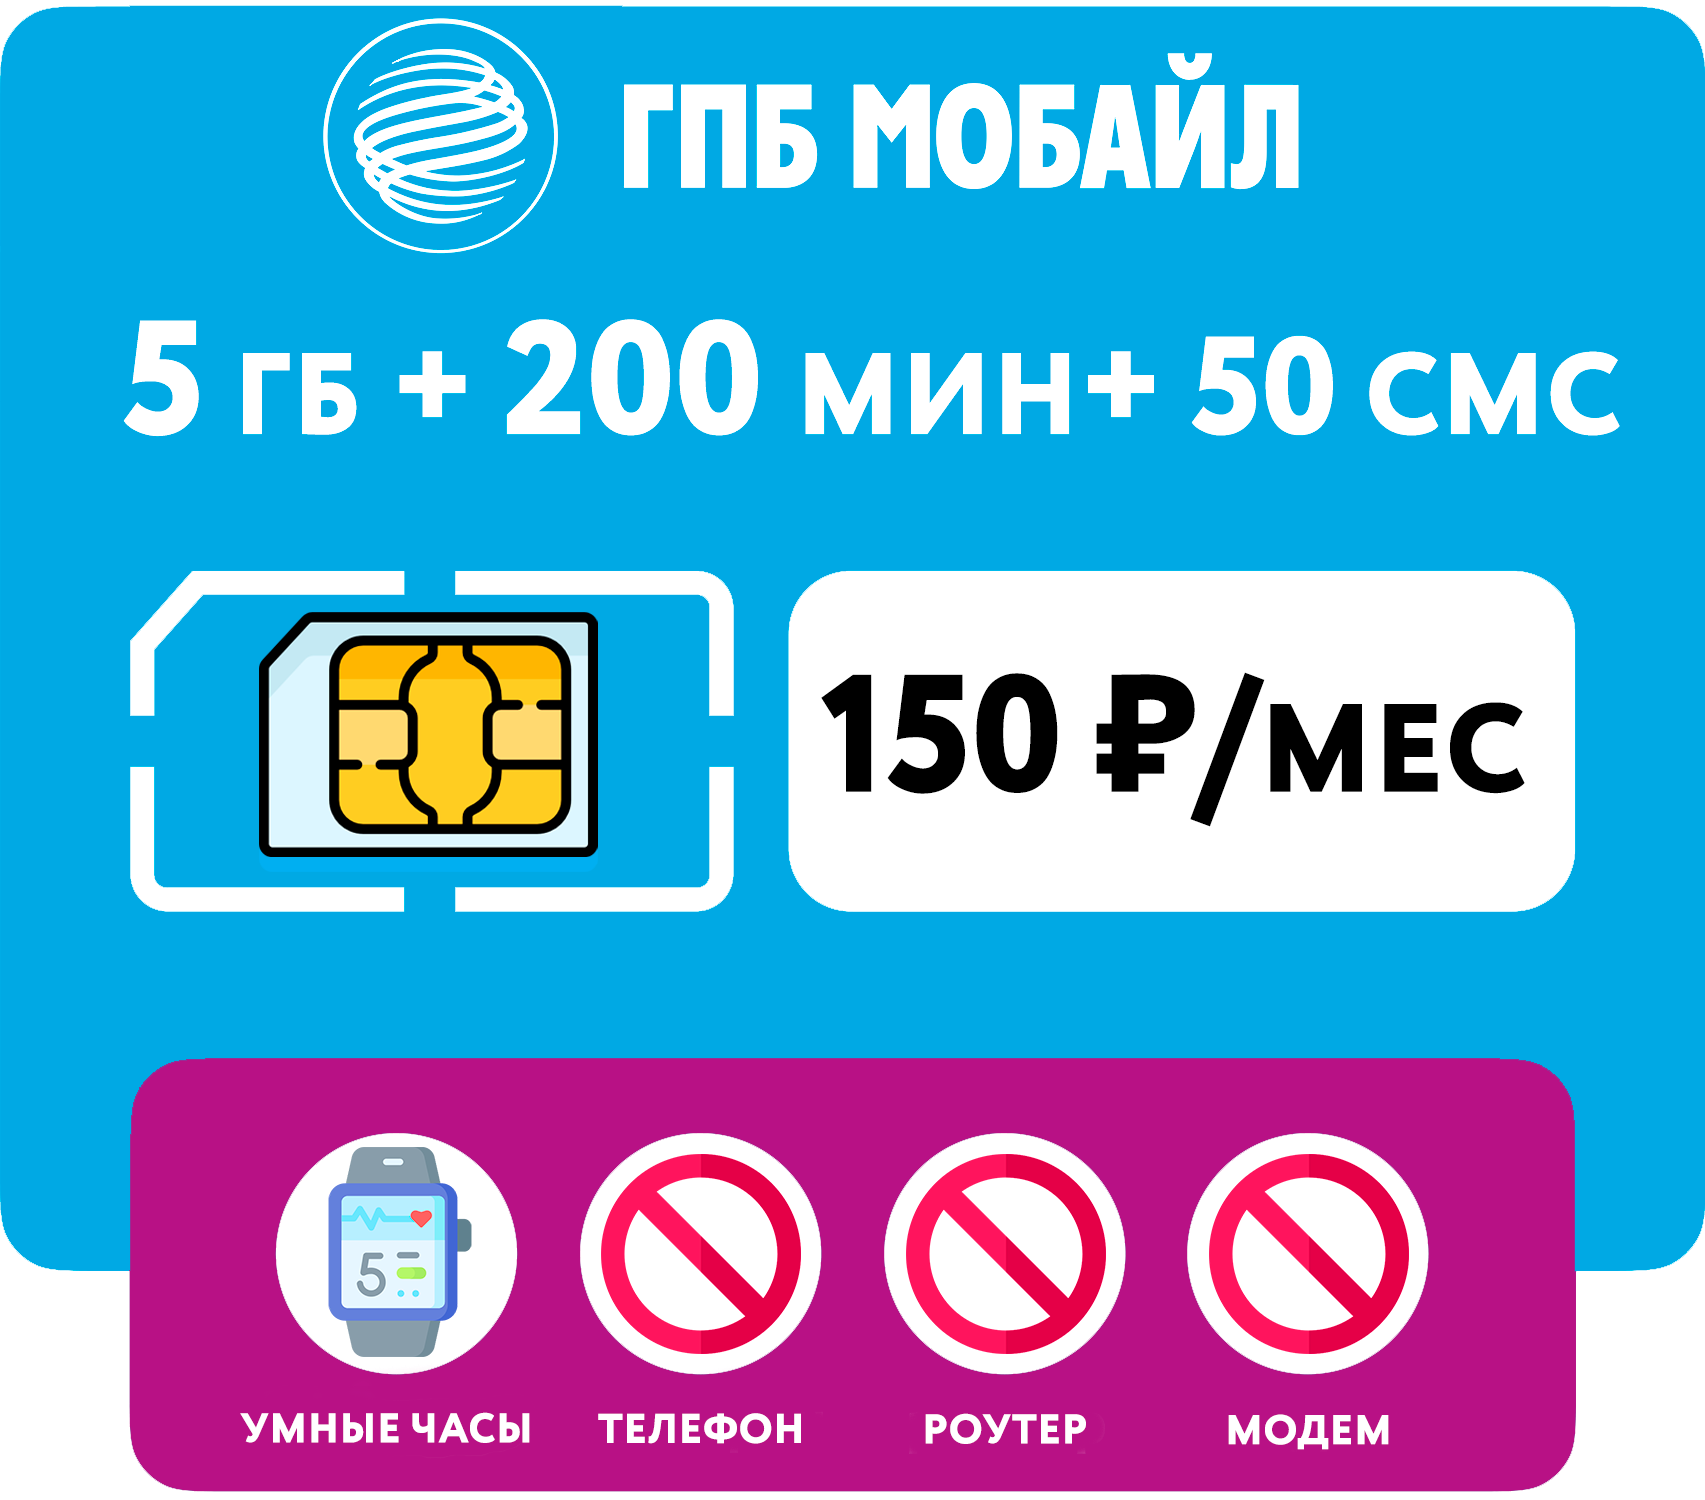 SIM-карта 5 гб интернета 200 мин 50 смс за 150 руб/мес для умных часов (Москва Московская область Россия)